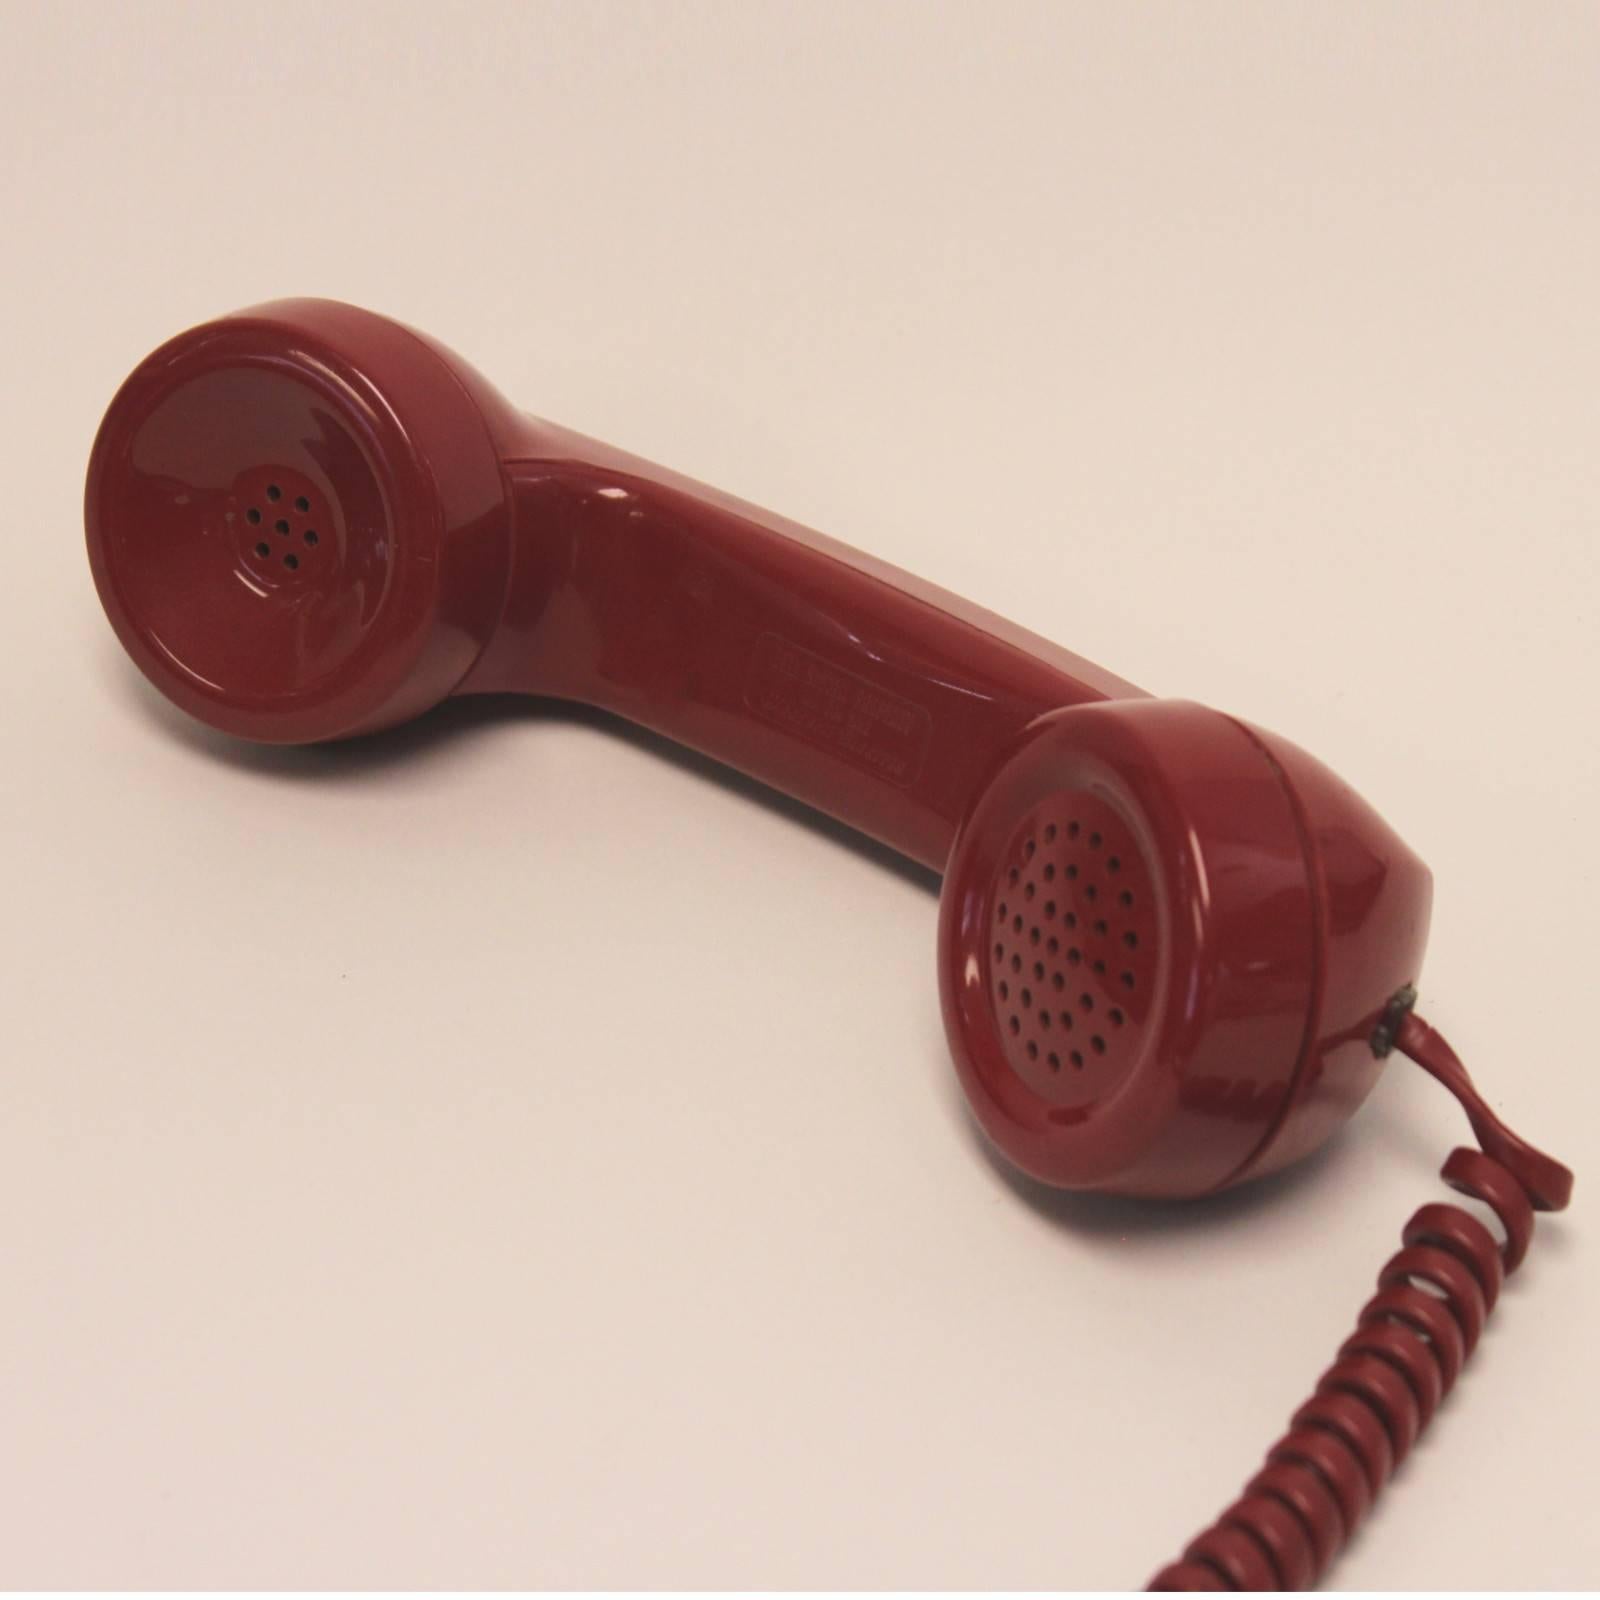 American Vintage Mid-Century Modern Red Western Electric Desktop Telephone, 1970s